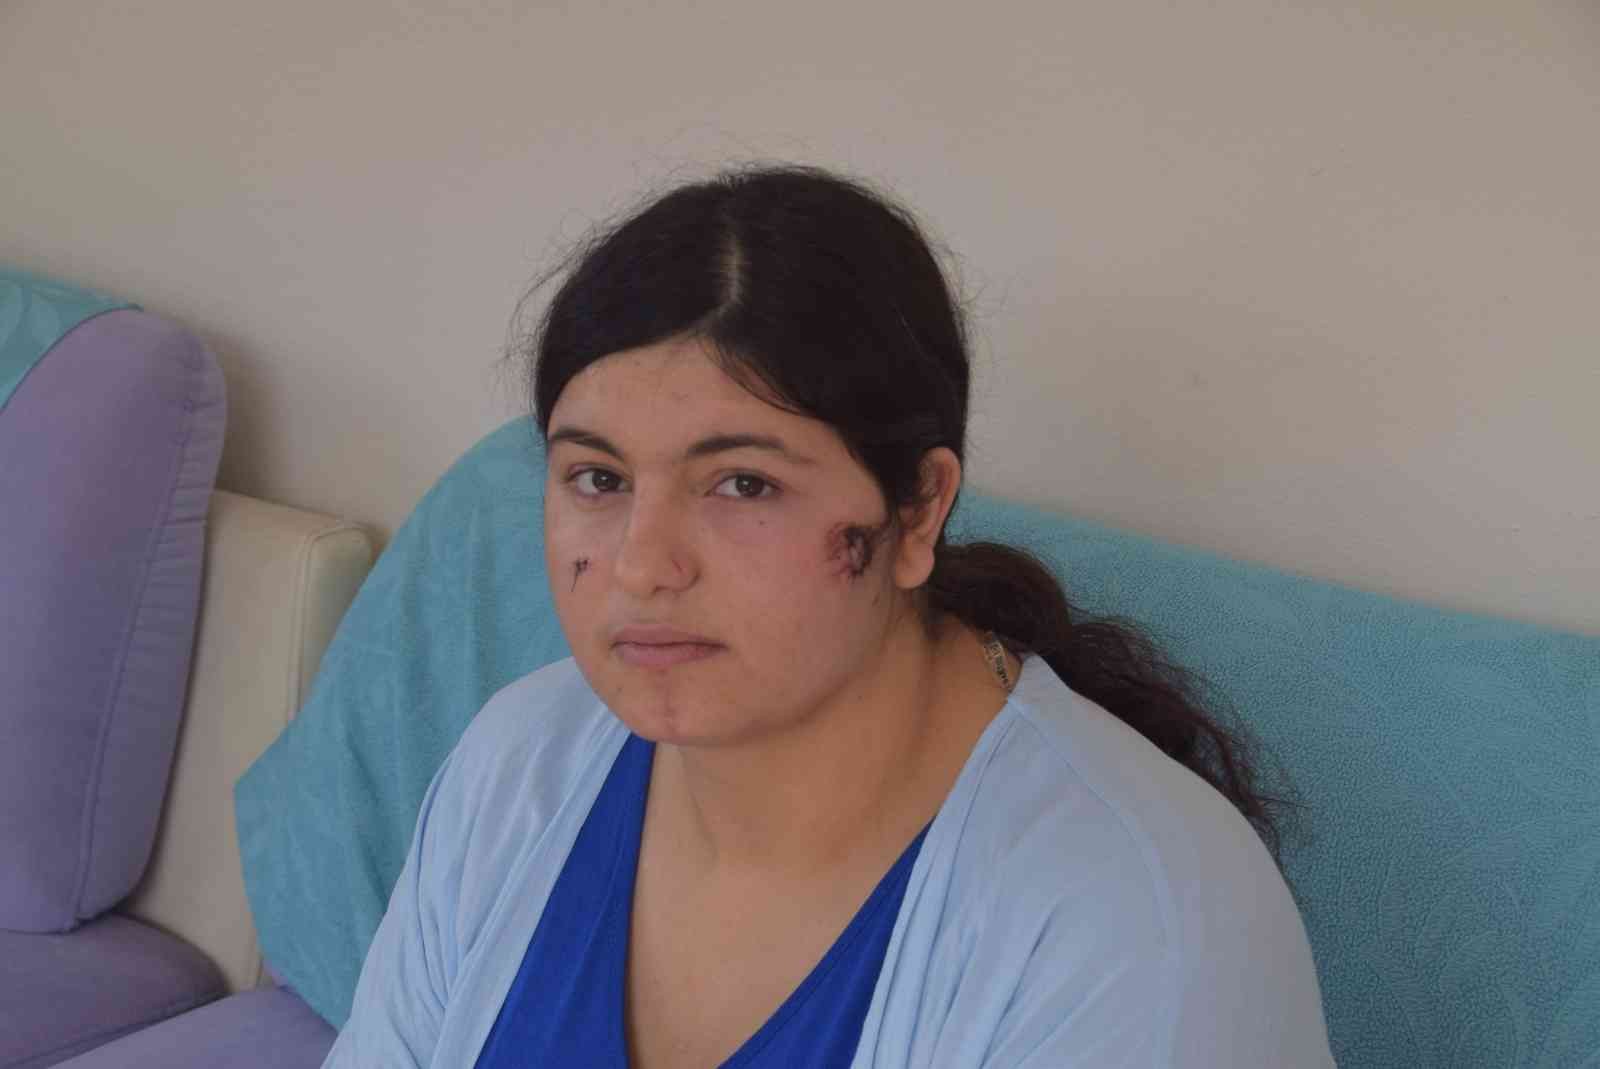 Eşini döven kocaya mahkemeden kötü haber: “Yaralama değil, kasten öldürmeye teşebbüs” #izmir